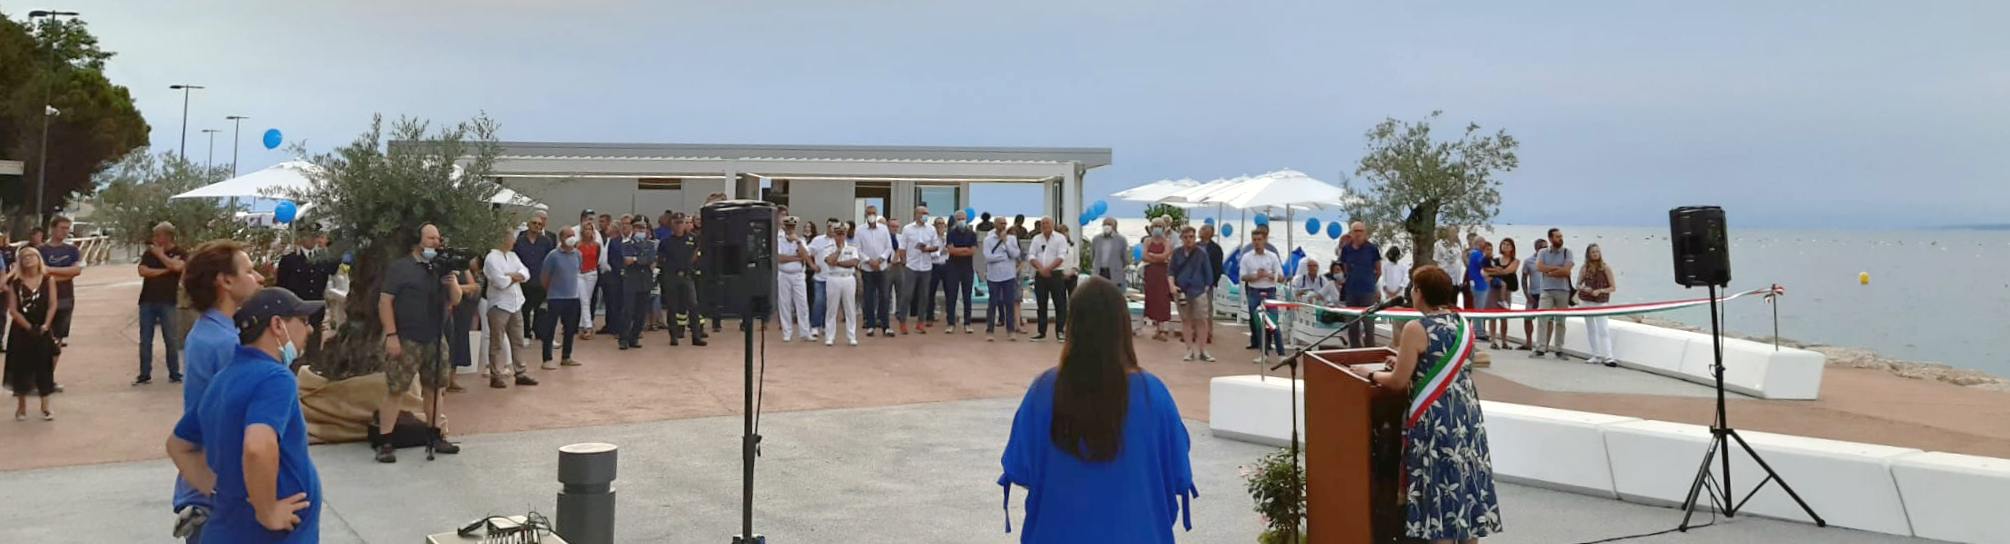 Foto Evento inaugurazione Acquario Muggia - Abaco Mobility